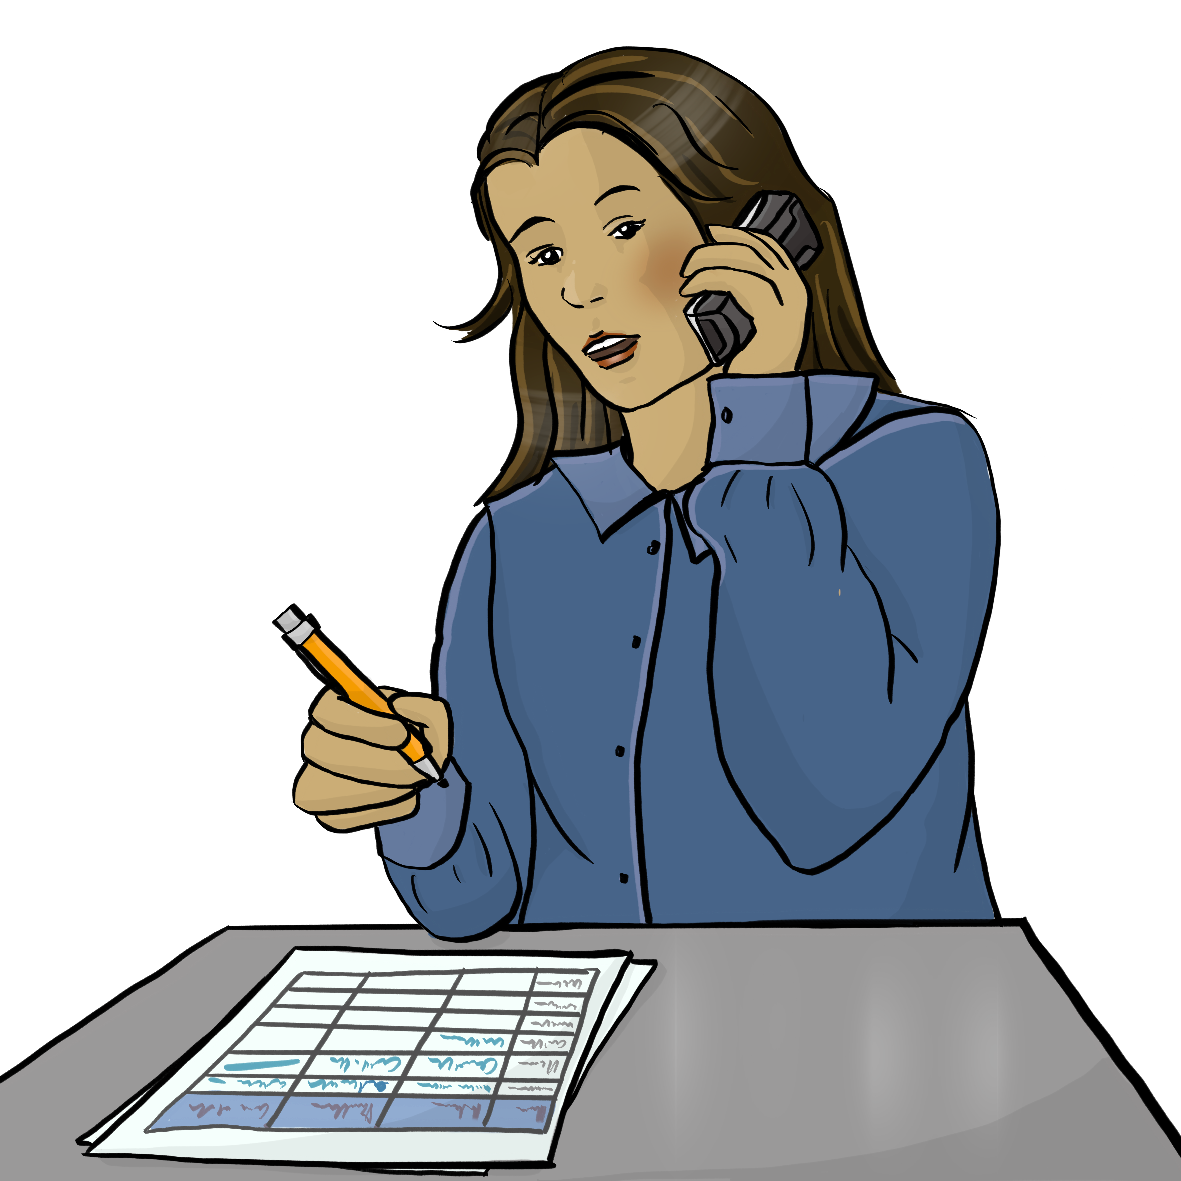 Eine Frau sitzt am Schreibtisch und hält sich einen Telefonhörer ans Ohr. Sie hält einen Stift in der Hand. Auf dem Schreibtisch liegt eine Liste.